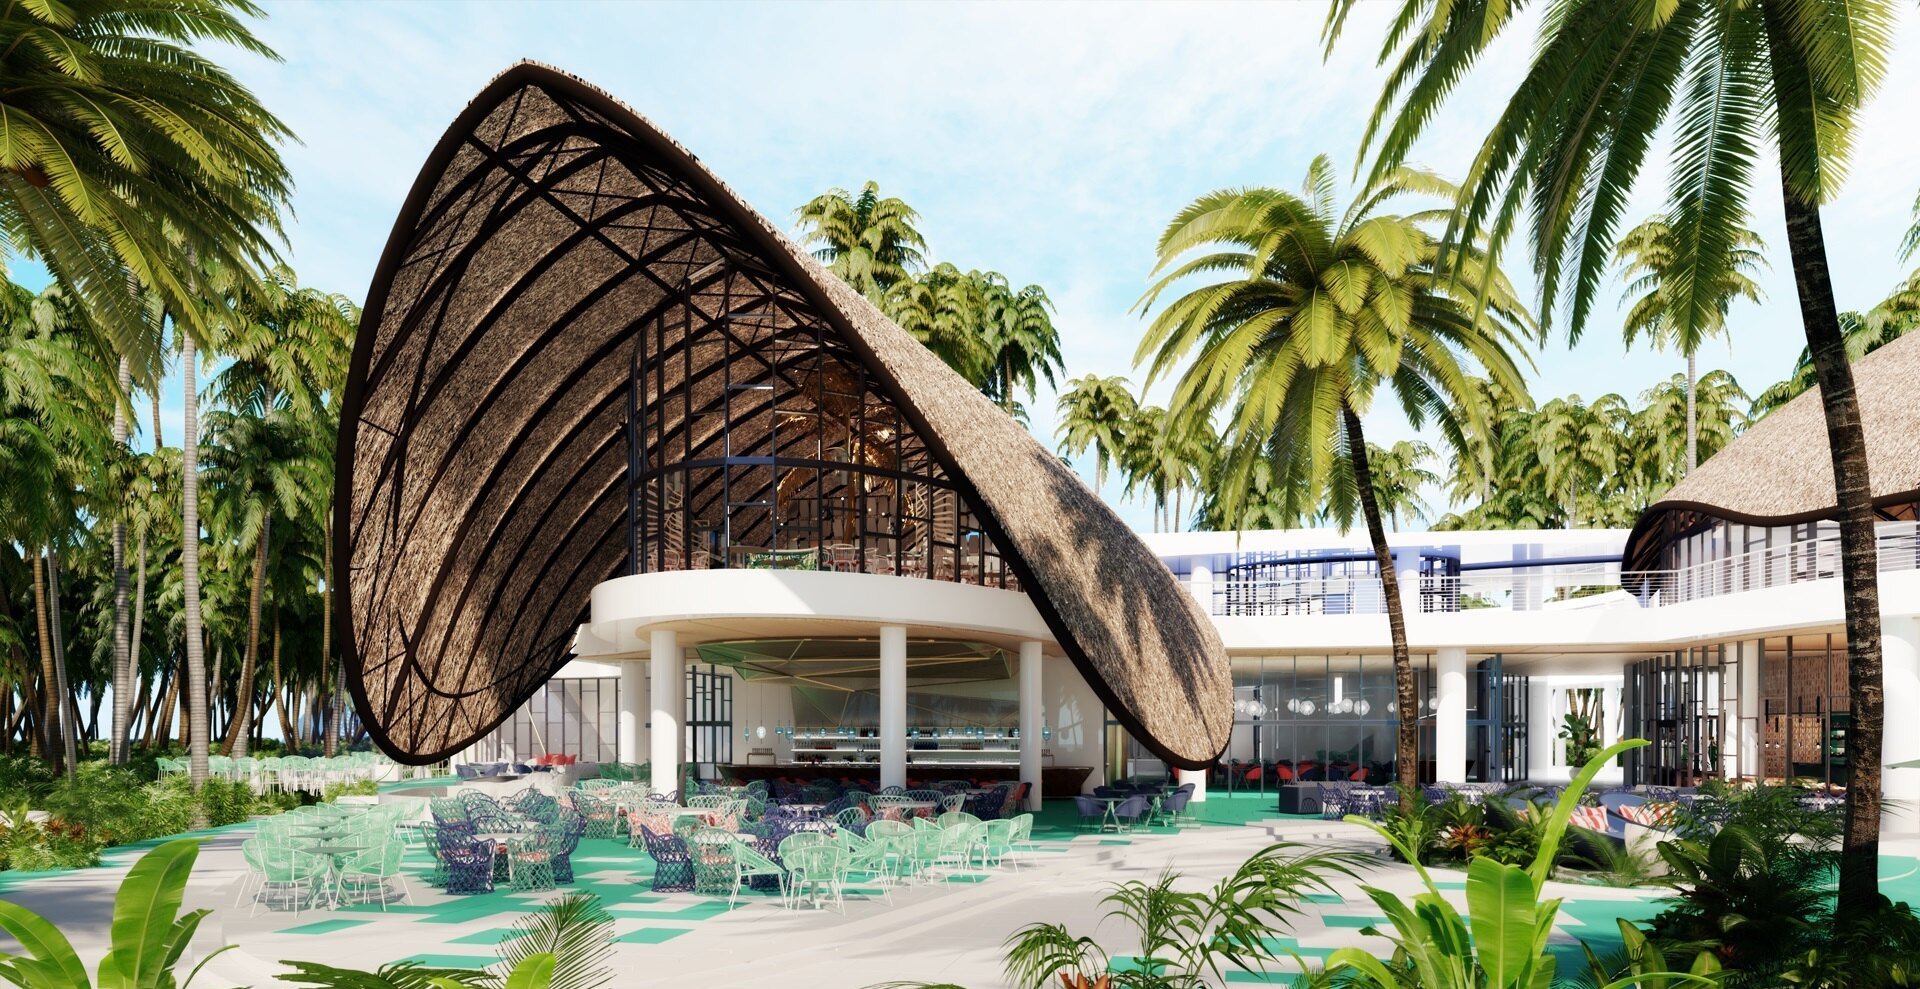 Club Med Miches Playa Esmeralda reabrira sus puertas el